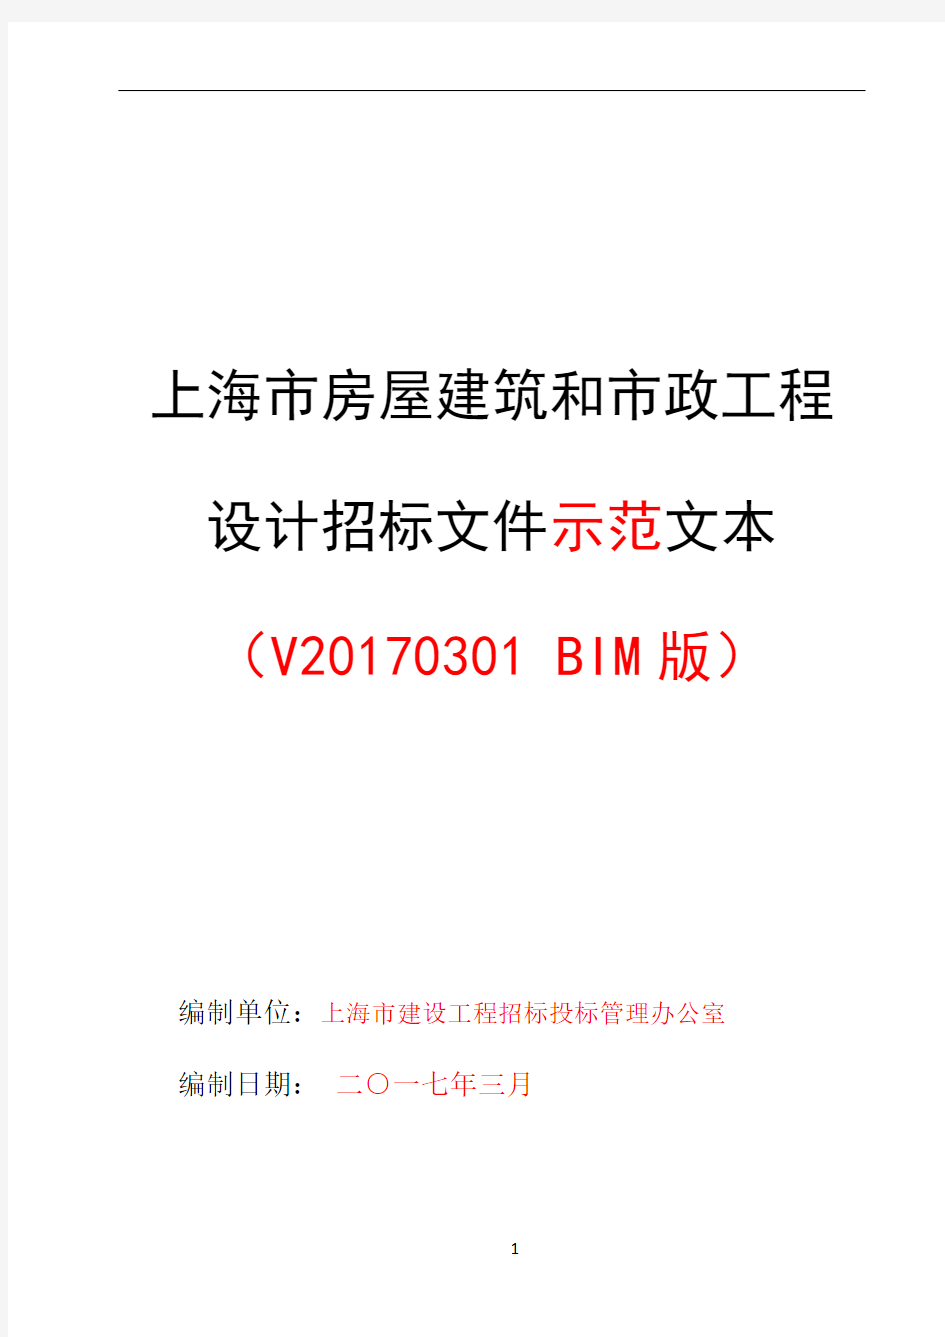 上海市房屋建筑和市政工程设计招标文件示范文本V20170301(BIM版)